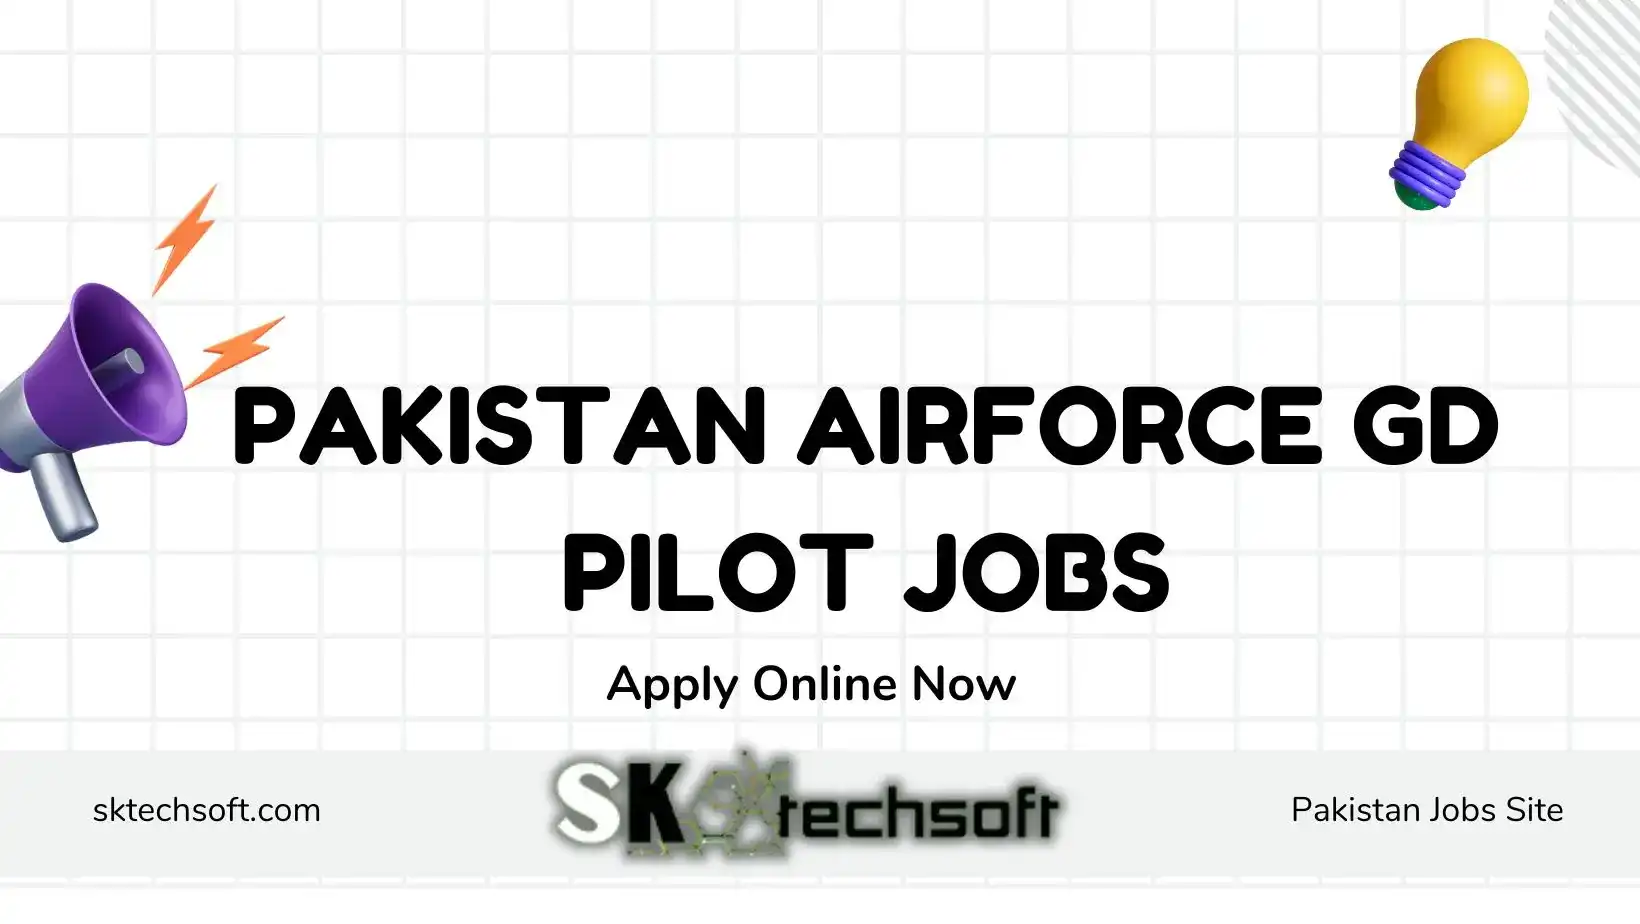 Pakistan Airforce GD Pilot Jobs